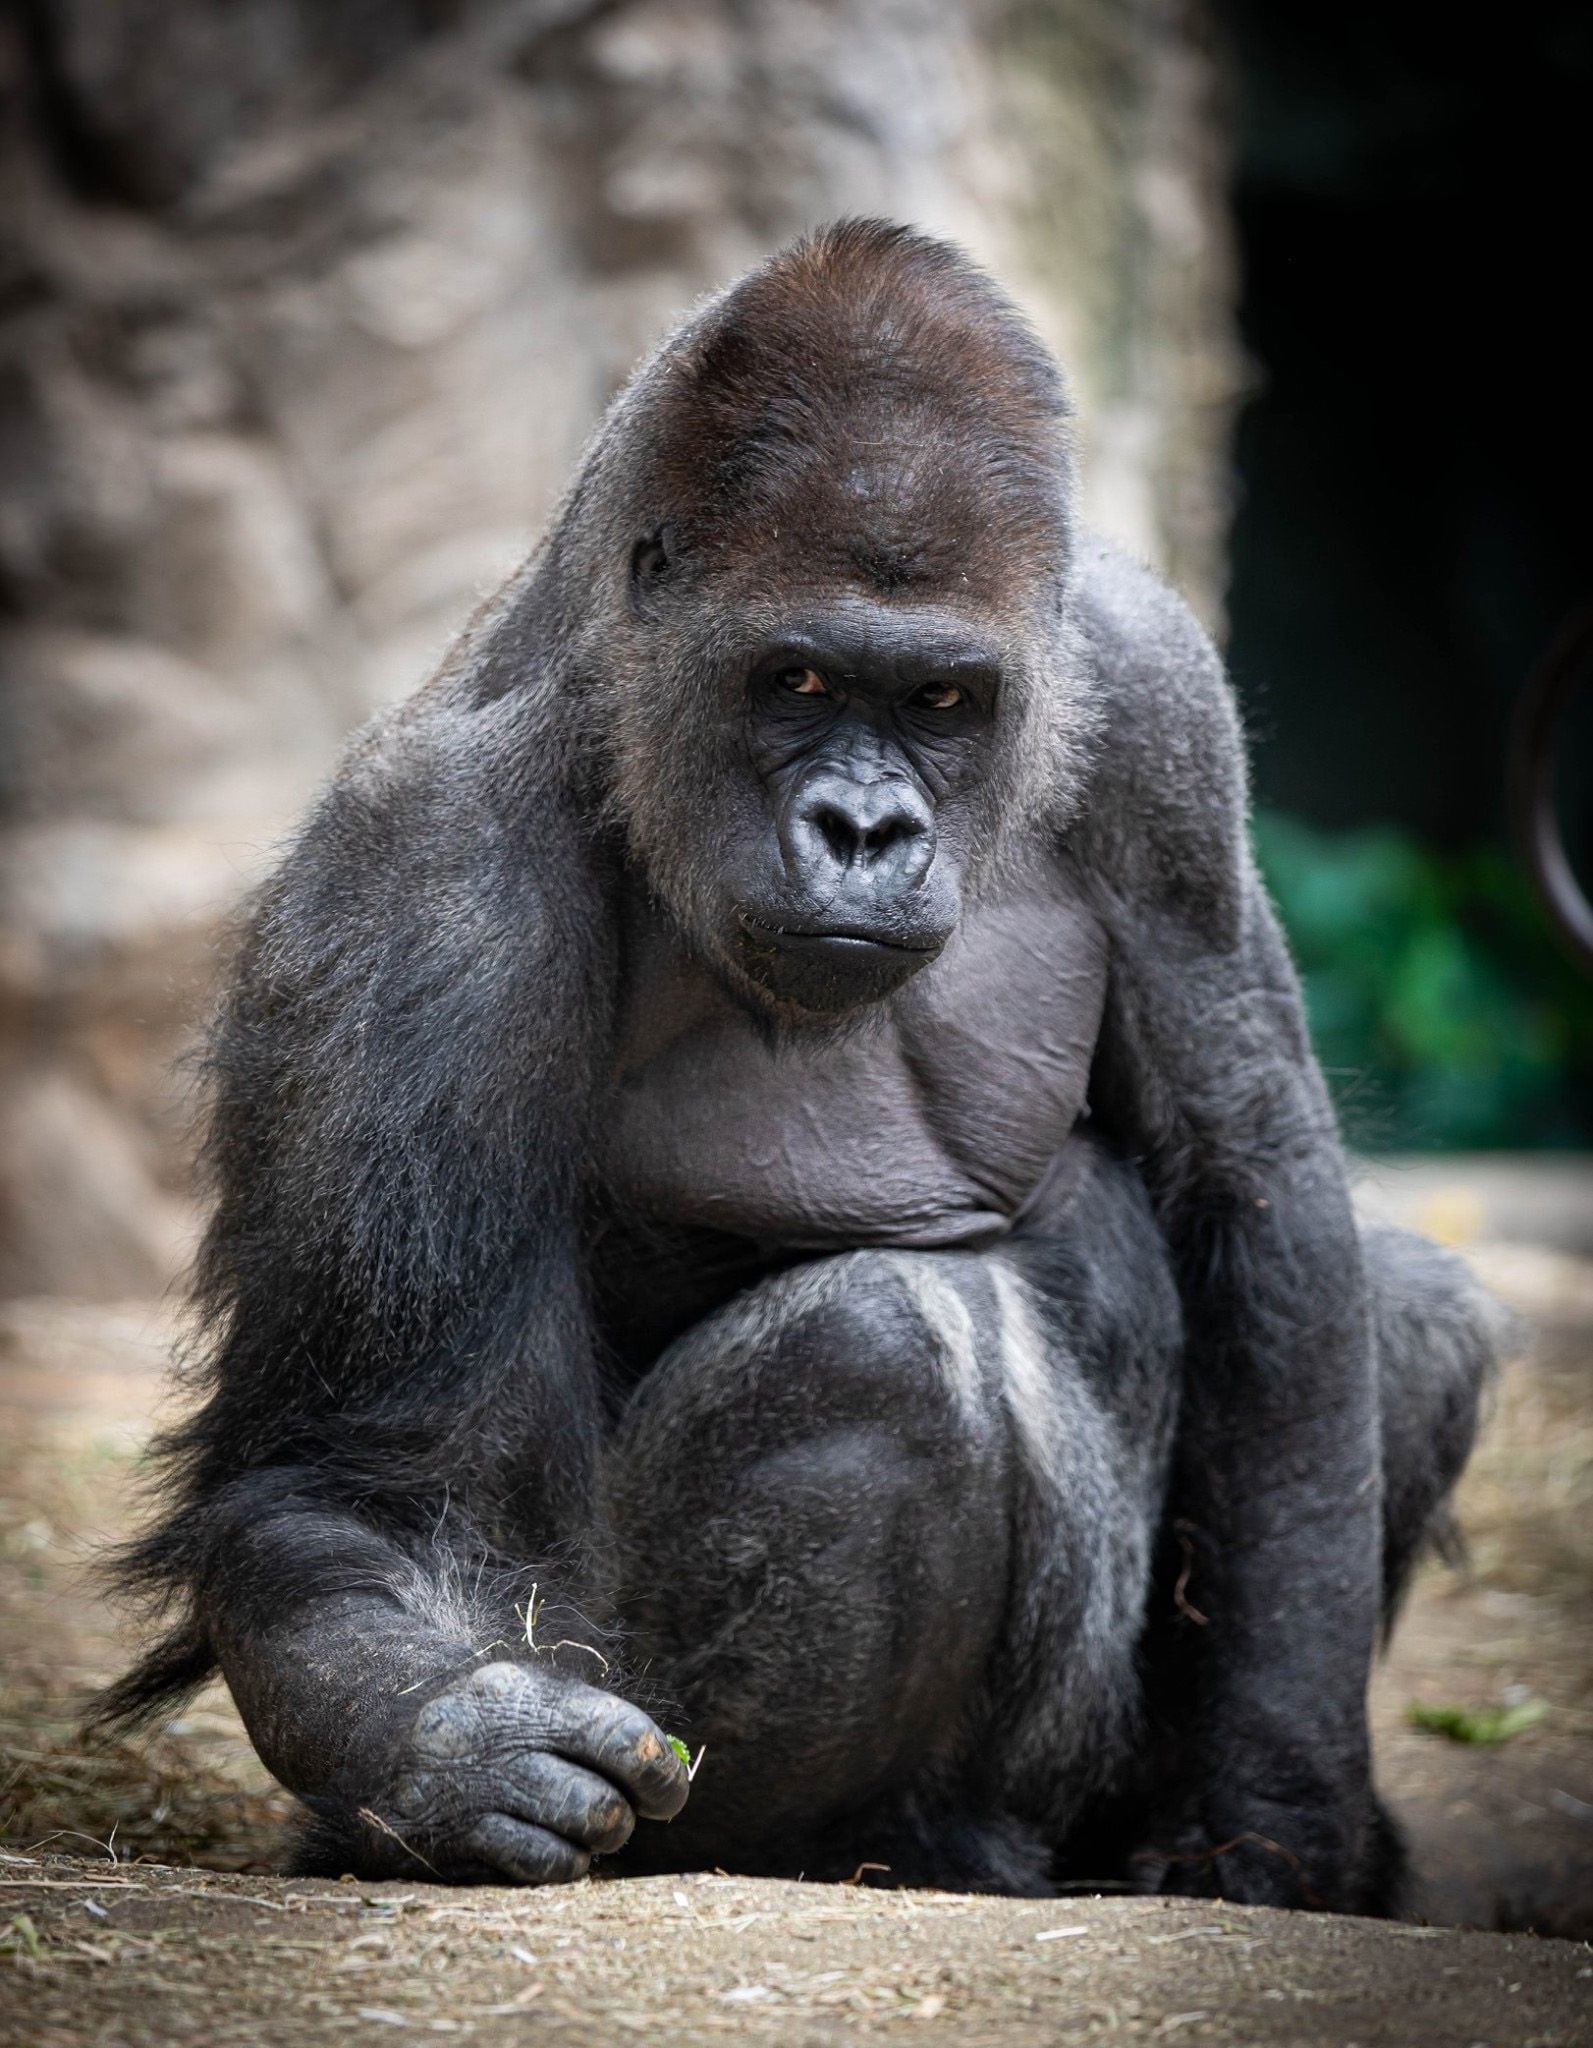 En 2012, Koga se volvió famoso por herir a uno de los cuidadores después de escapar brevemente de su recinto. (Facebook/The Buffalo Zoo)Koga, gorilas, animales, mascotas, muerte, zoológicos, Nueva York, Estados Unidos, primates, simios